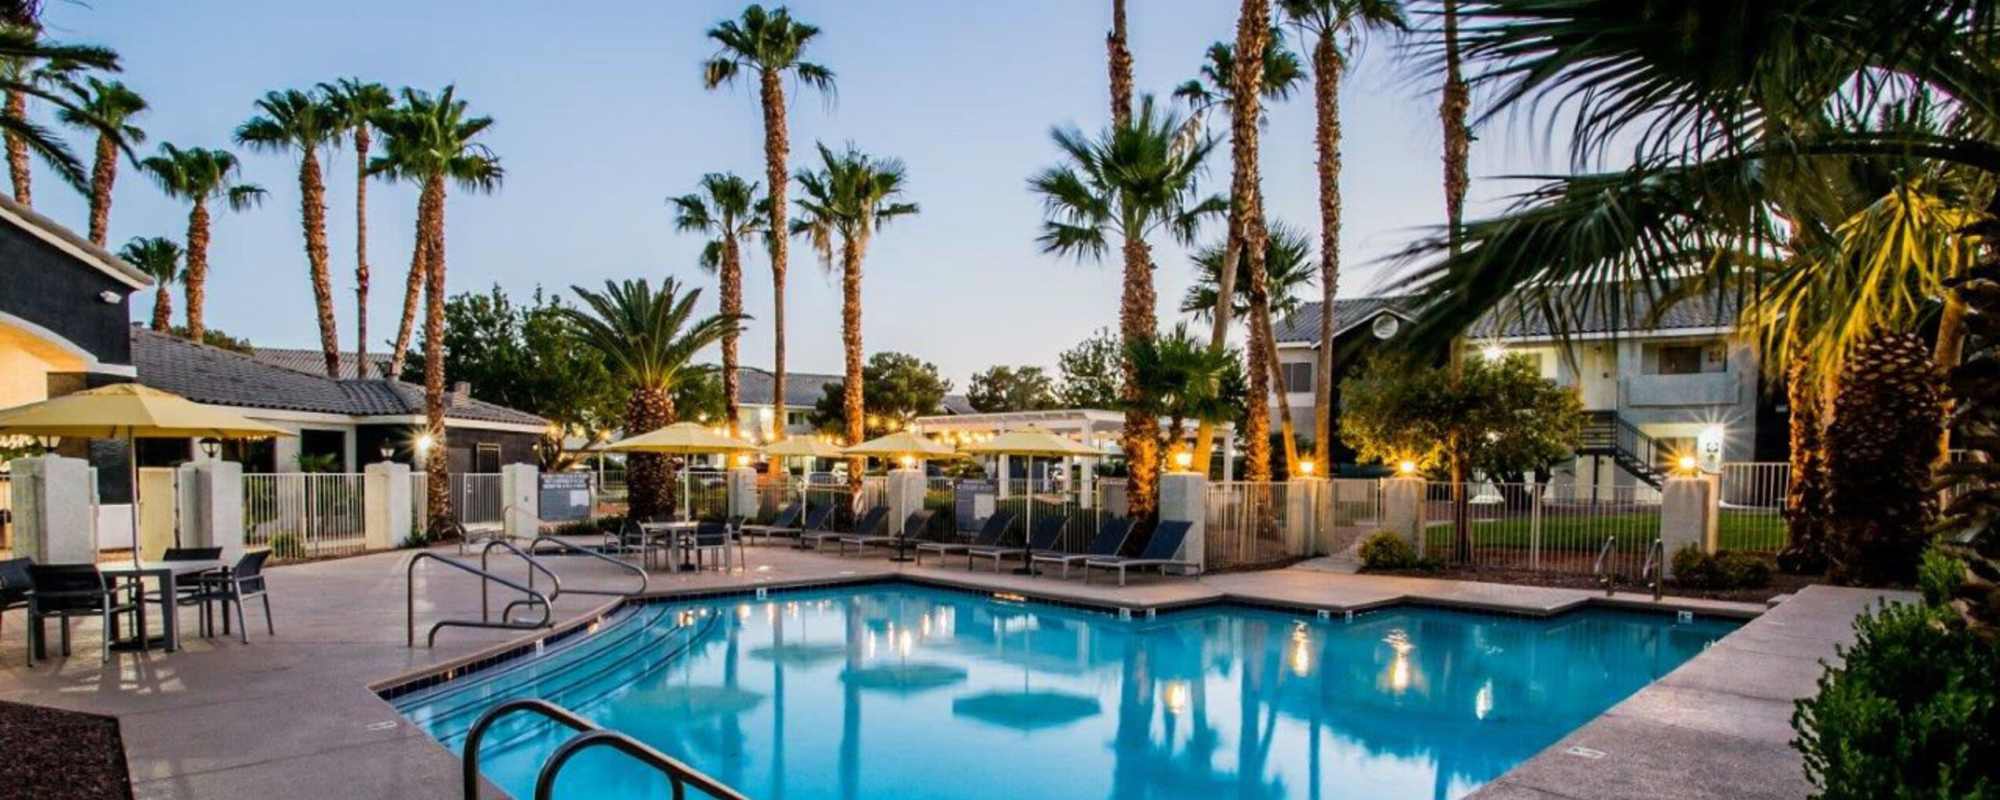 Apartments at Villas at 6300 in Las Vegas, Nevada